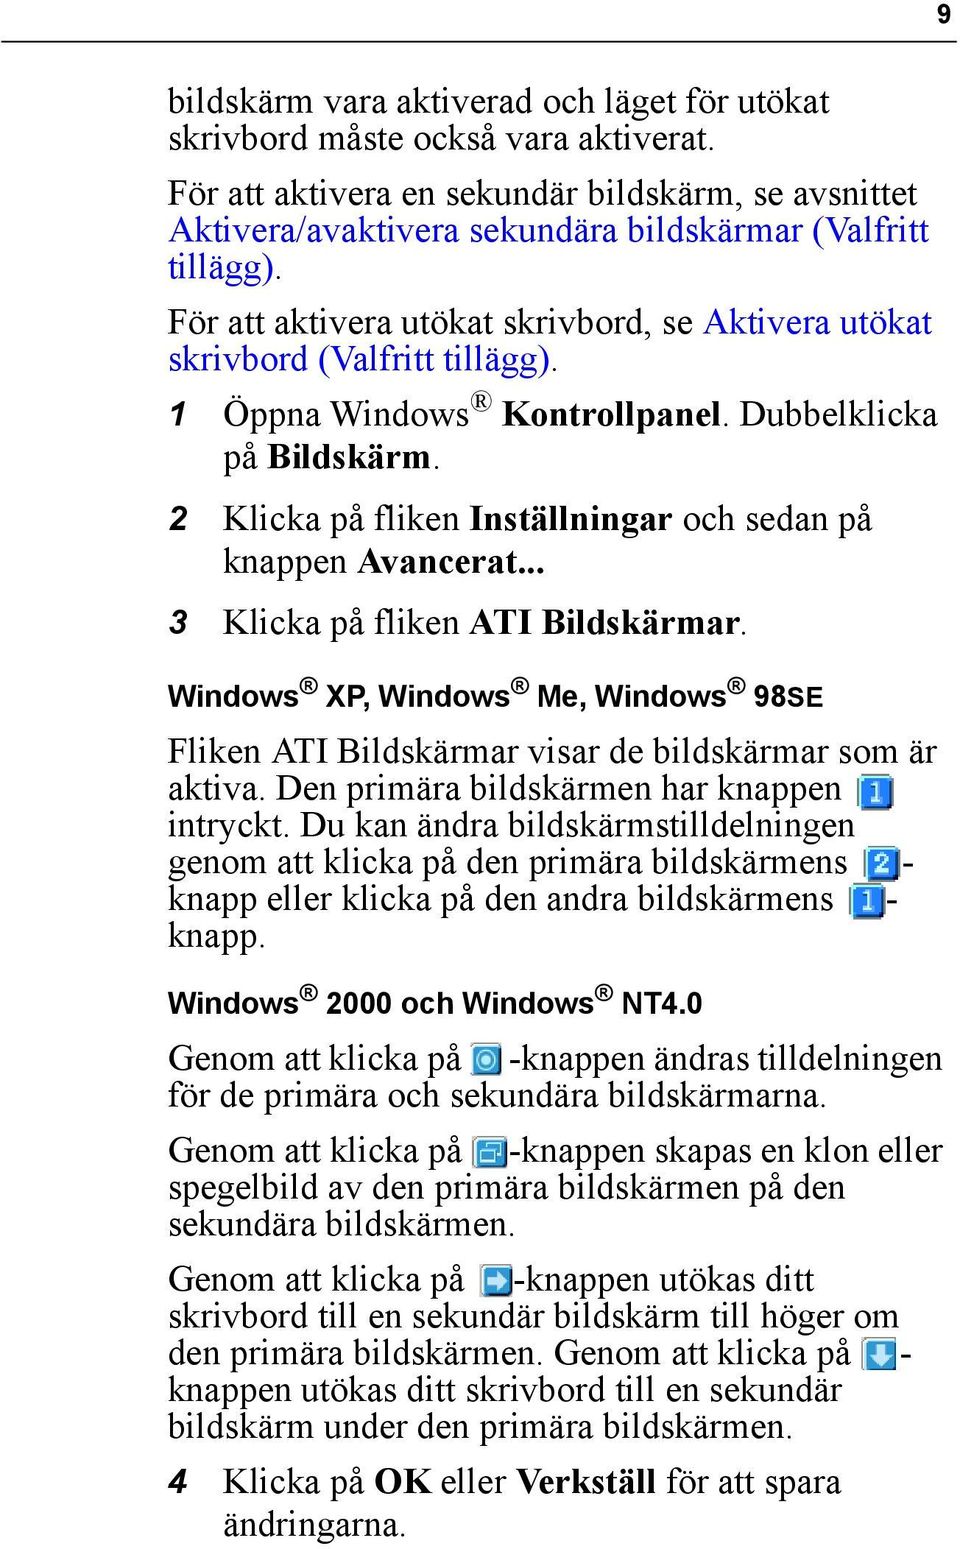 2 Klicka på fliken Inställningar och sedan på knappen Avancerat... 3 Klicka på fliken ATI Bildskärmar. Windows XP, Windows Me, Windows 98SE Fliken ATI Bildskärmar visar de bildskärmar som är aktiva.